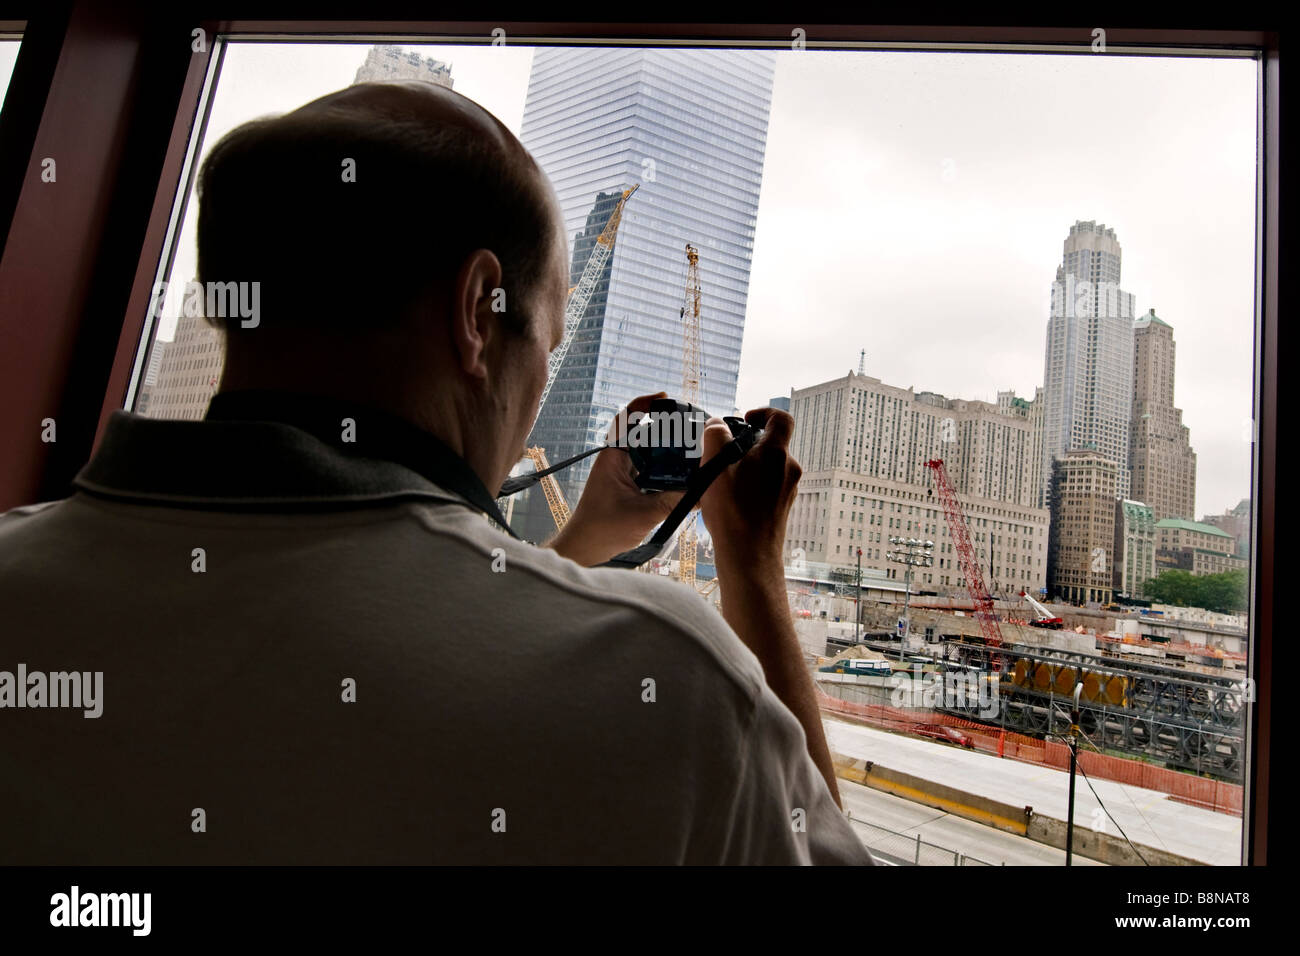 Tourist taking photographs of ground zero through a window Stock Photo